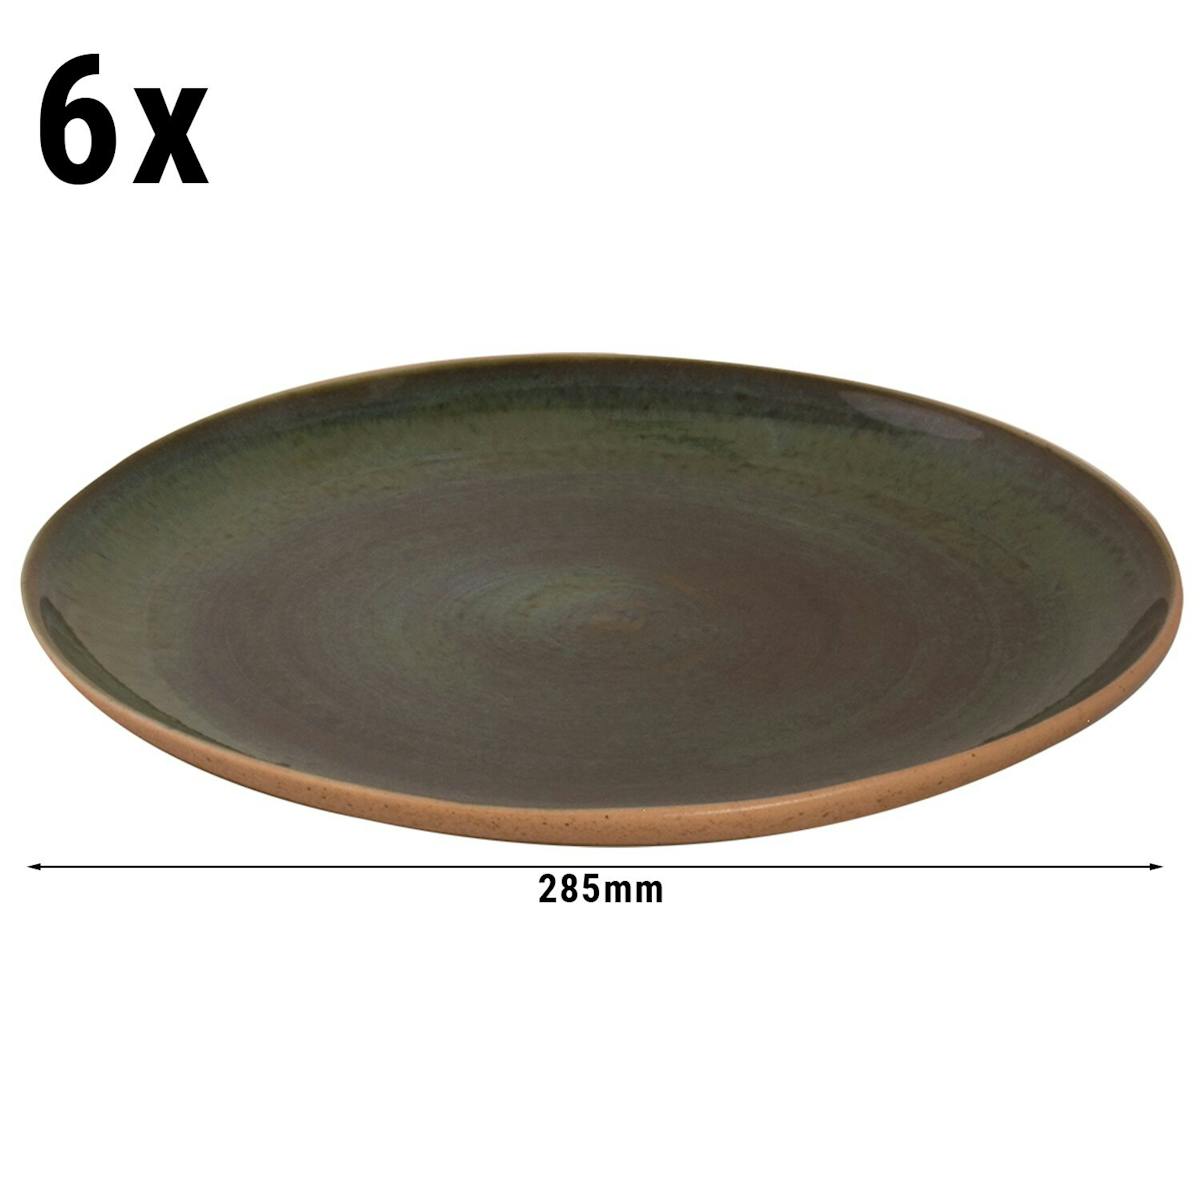 (6 Kusů) WISTERIA - Talíř mělký - Ø 28,5 cm - zelený/béžový